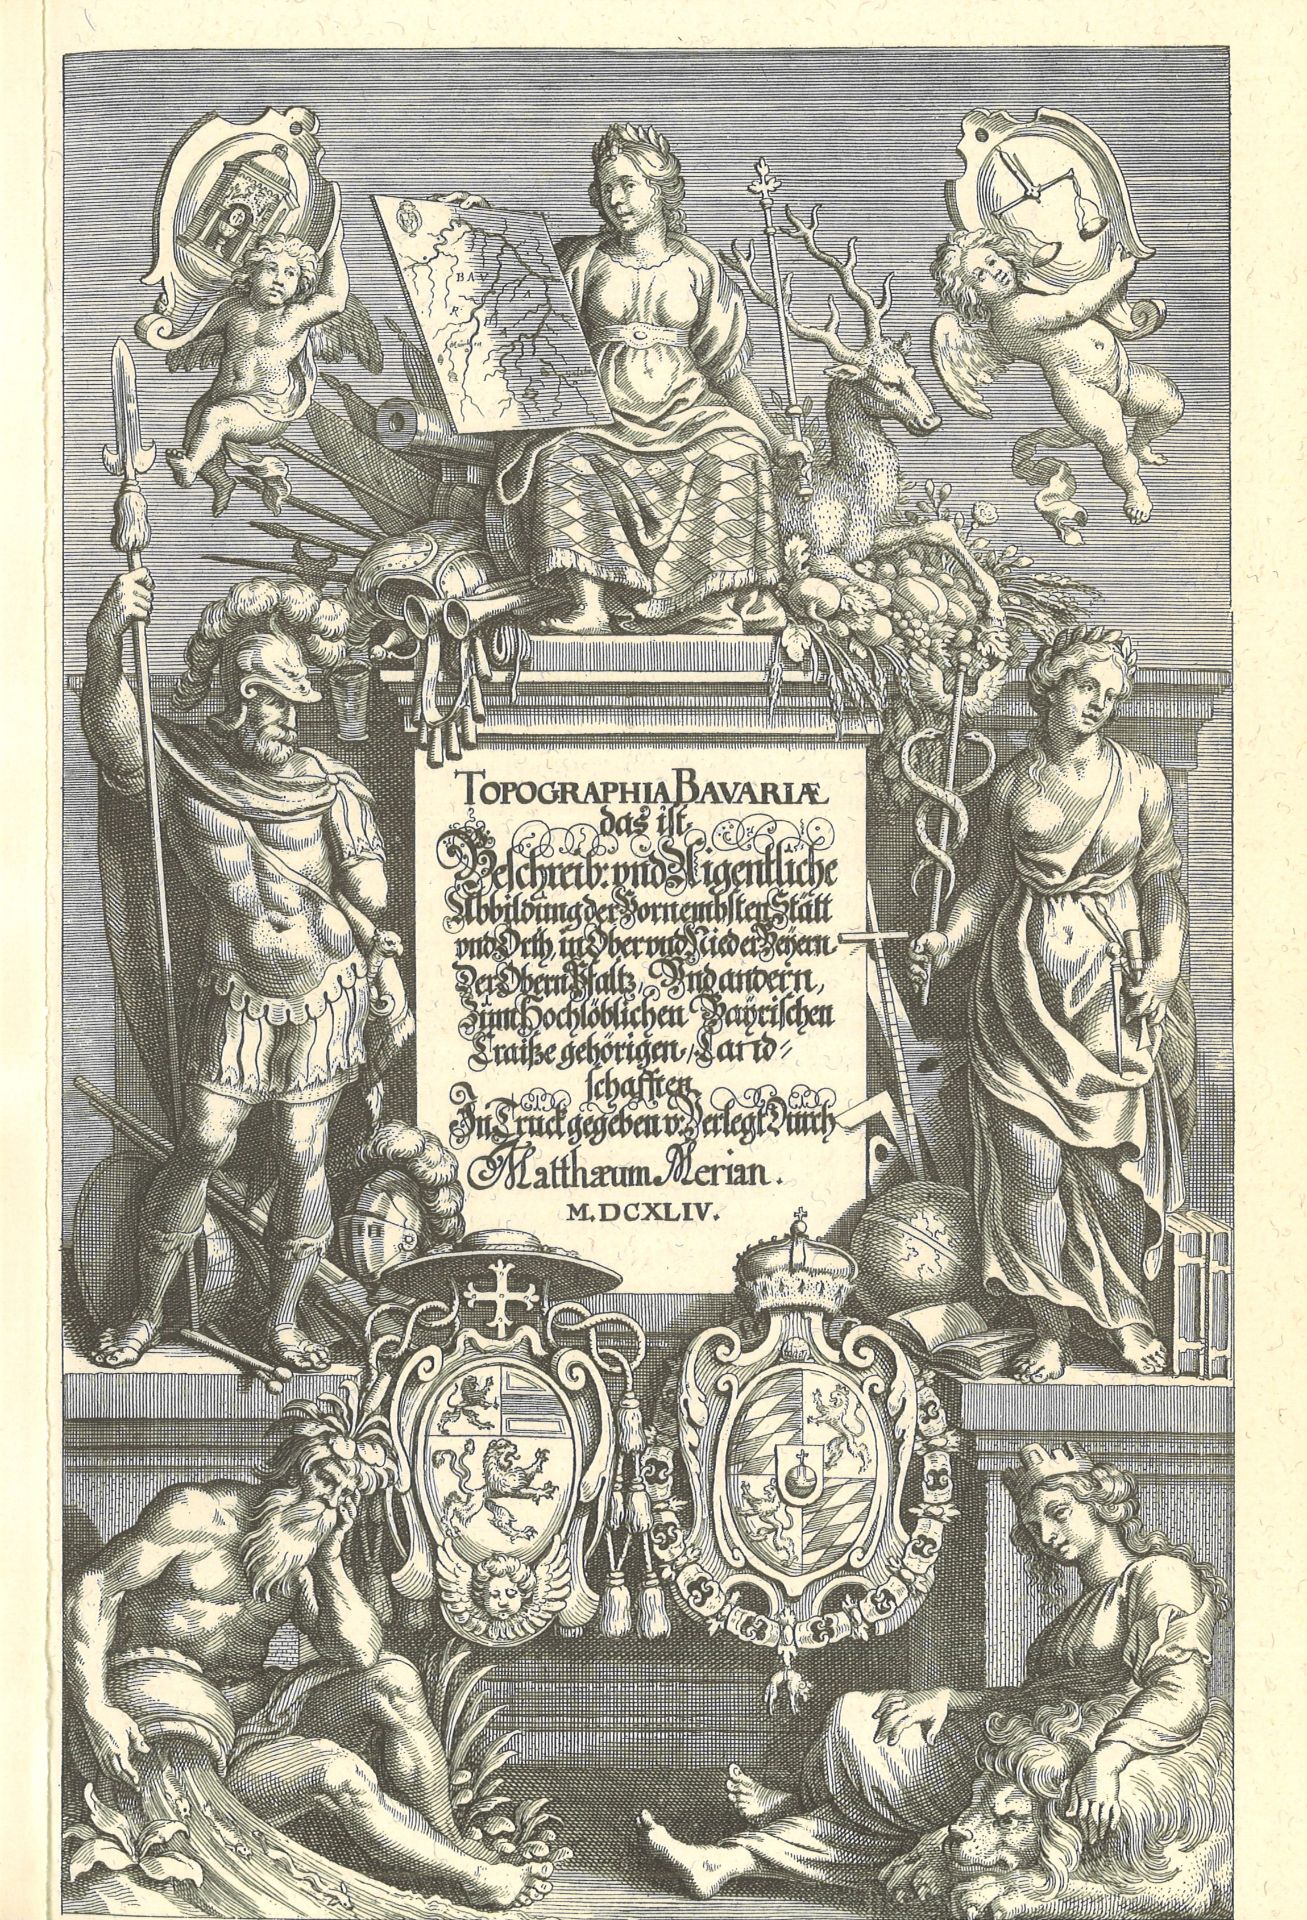 Lot Bücher, insgesamt 4 Stück, dabei z. Bsp. Faksimile Druck von 1962 Basel "Merian Bayern 1657", "